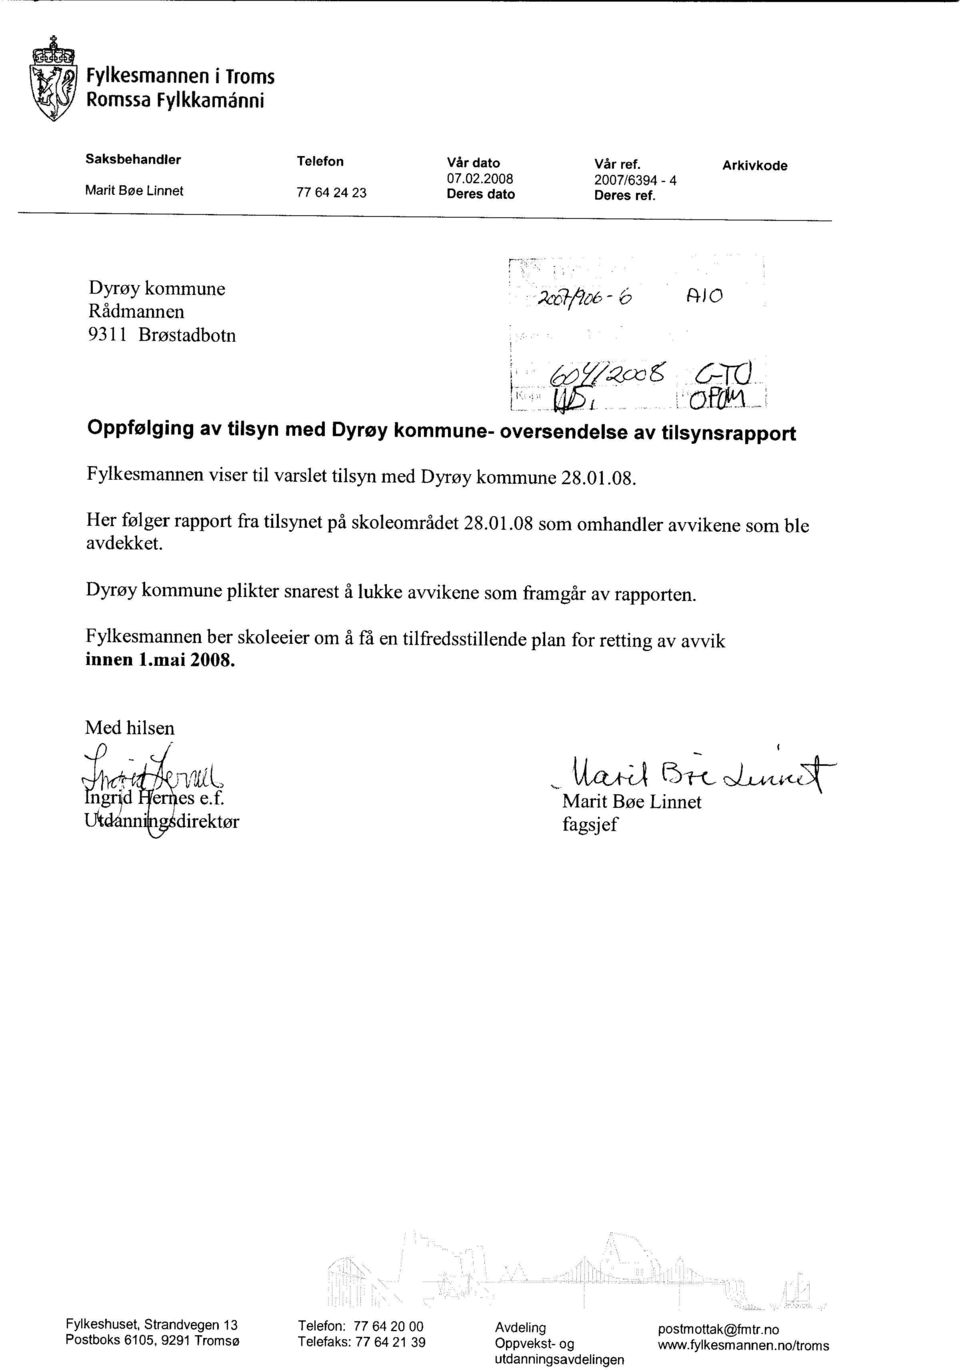 Her følger rapport fra tilsynet på skoleområdet 28.01.08 som omhandler avvikene som ble avdekket. Dyrøy kommune plikter snarest å lukke avvikene som framgår av rapporten.